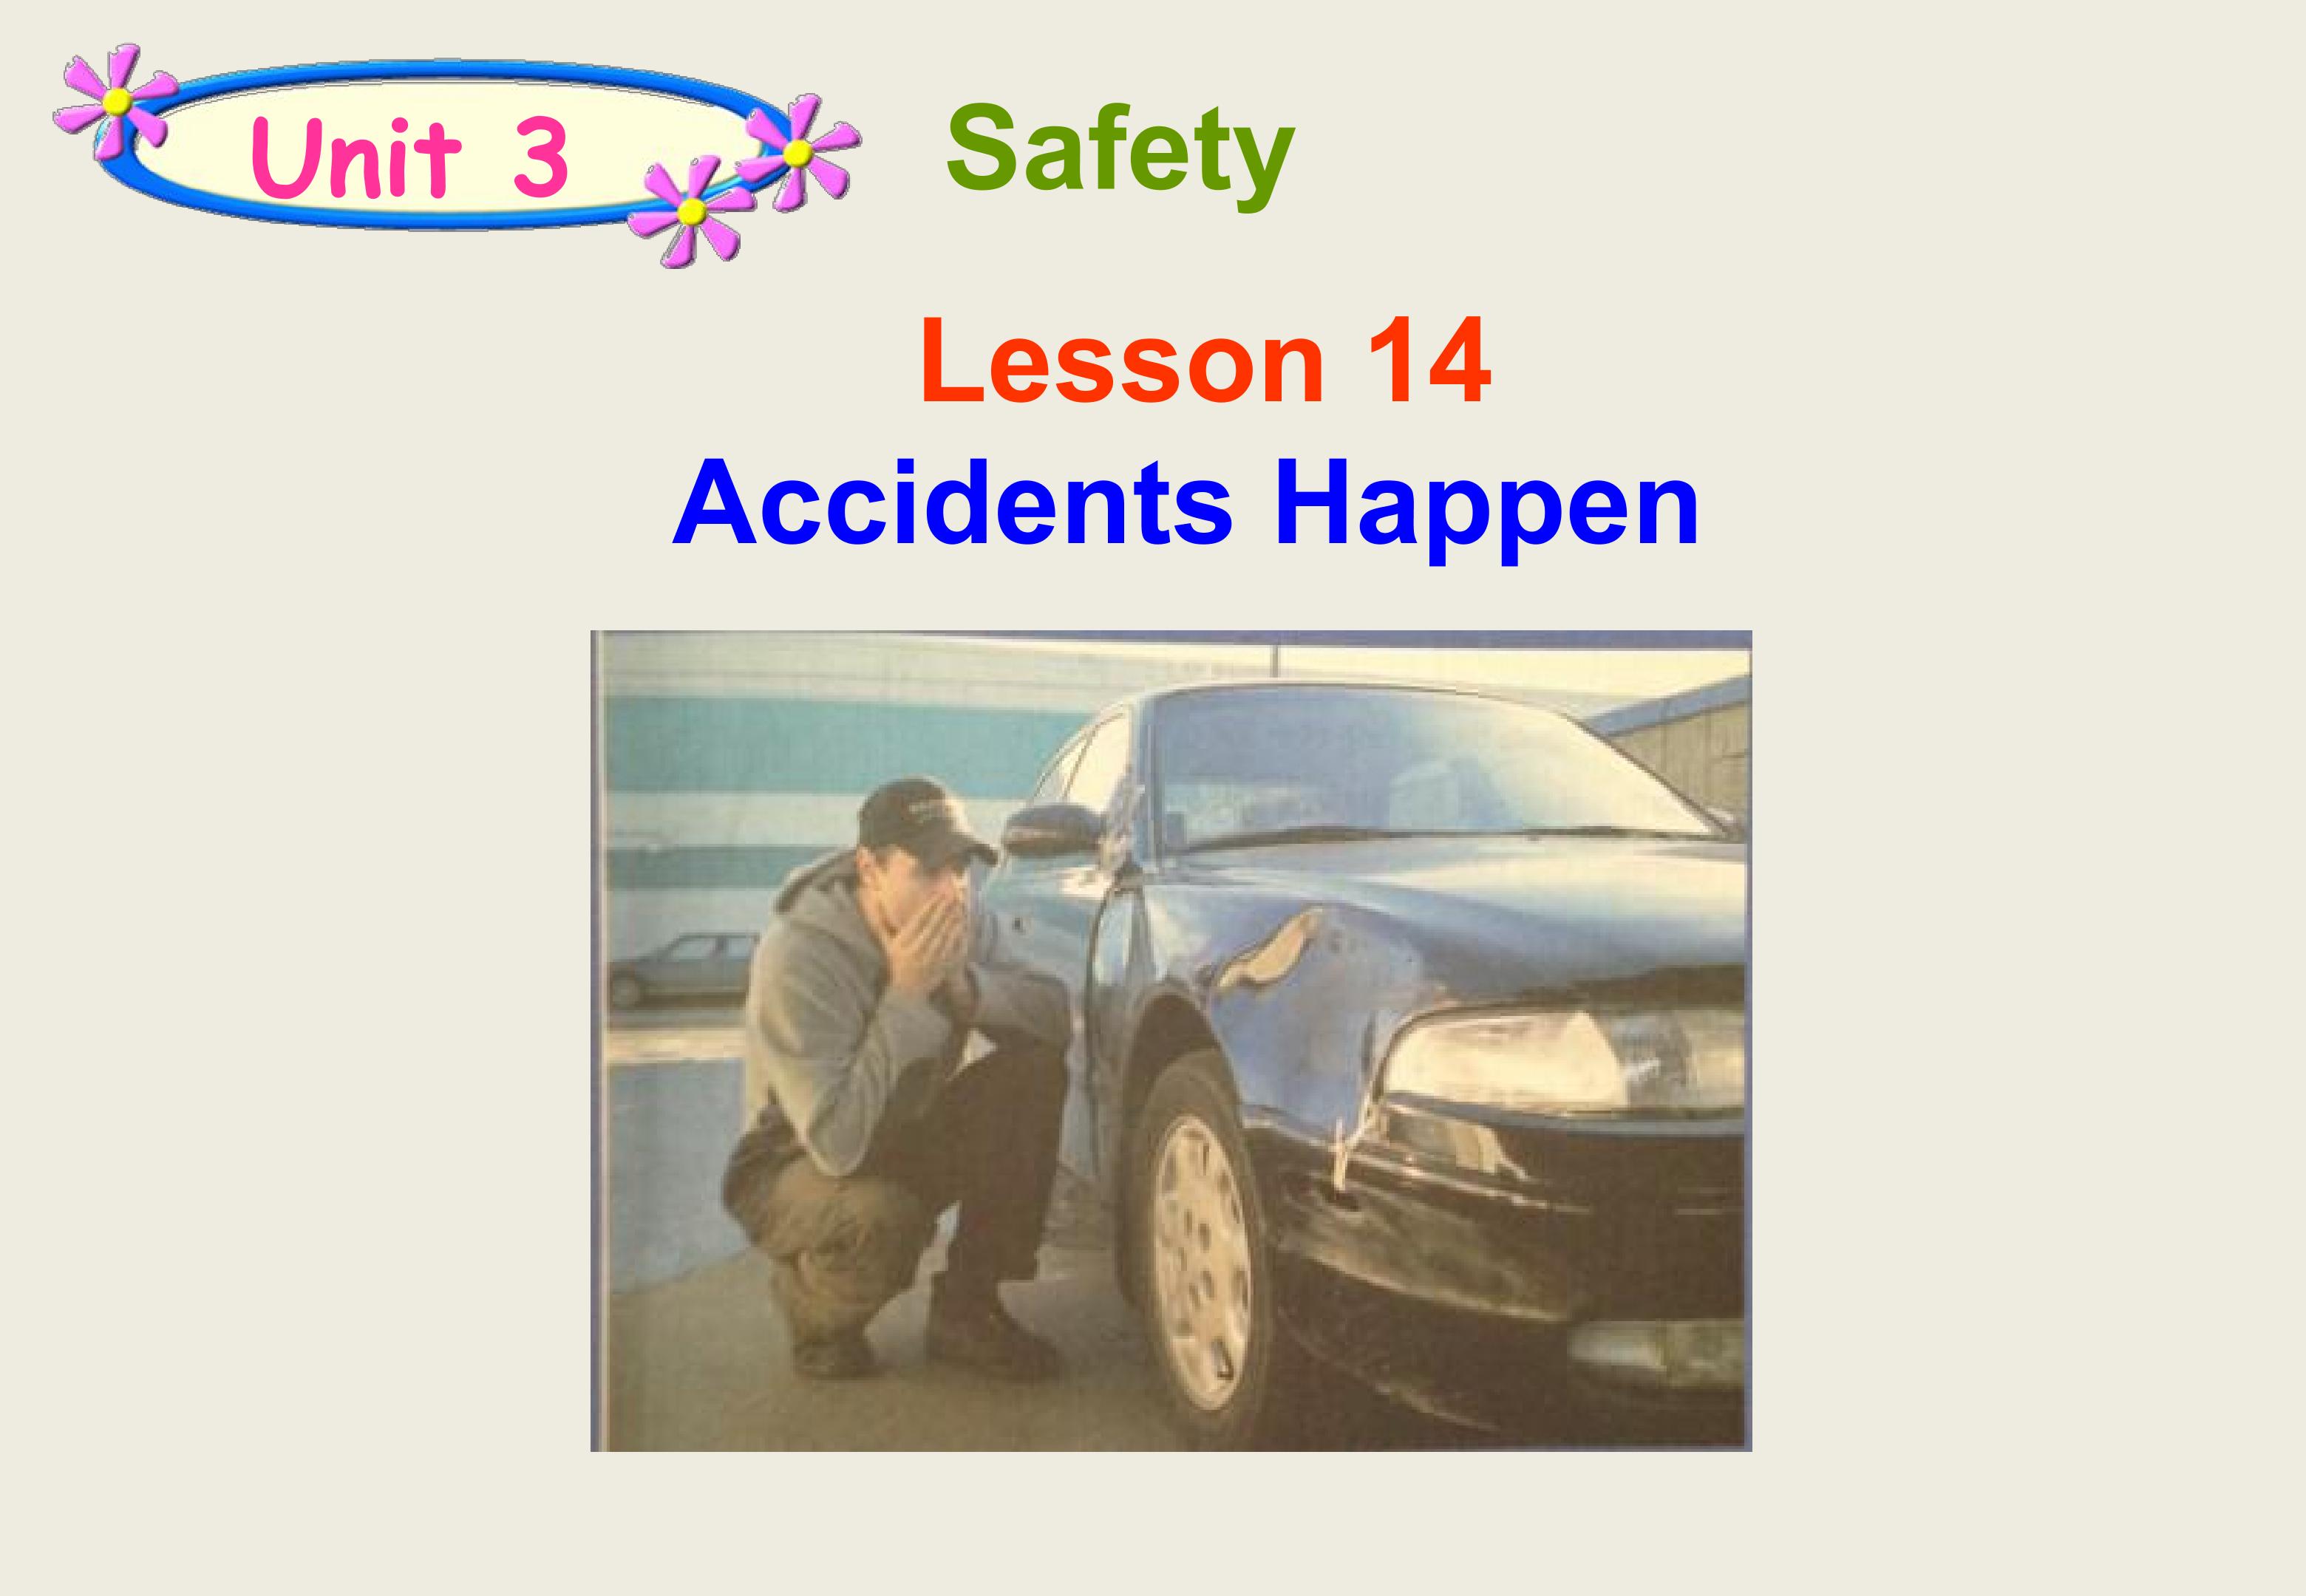 Lesson 14: Accidents Happen